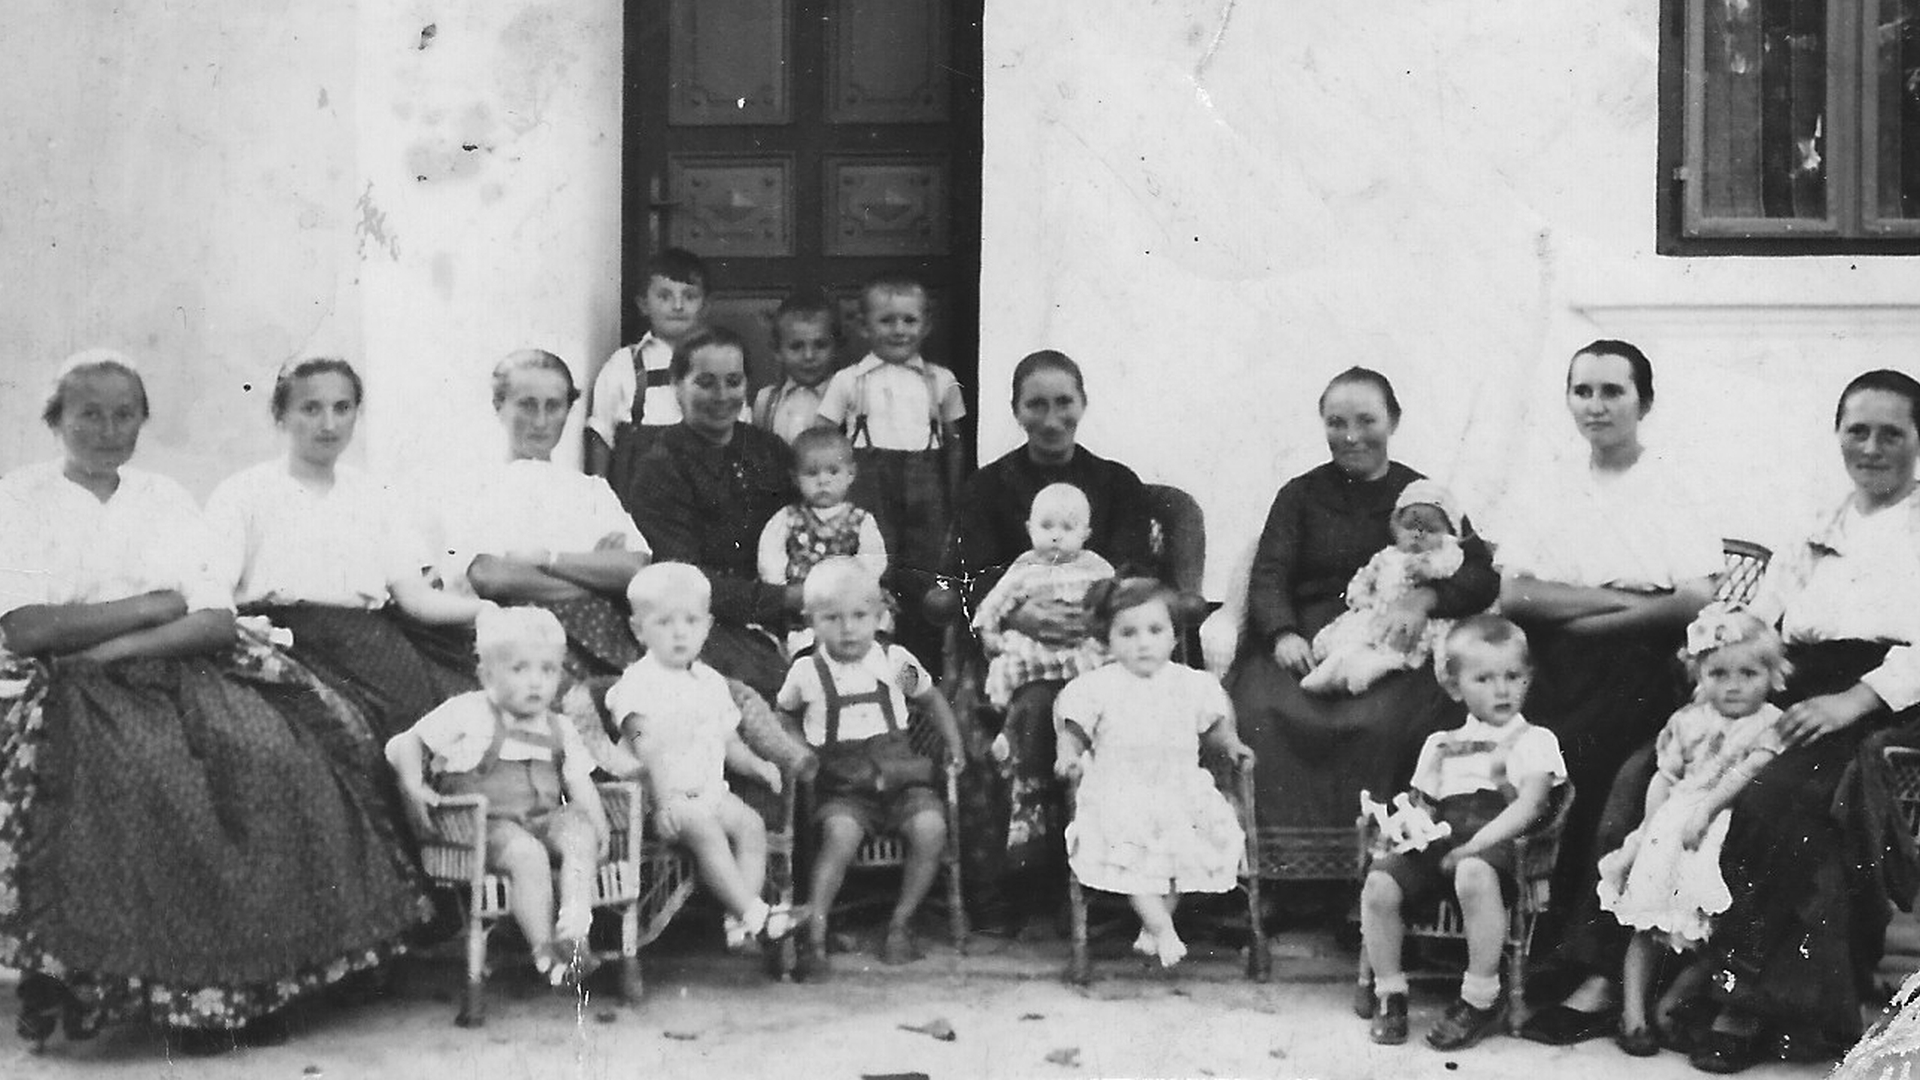 Nachbarsfrauen-Treff in der Klostergasse am Sonntagnachmittag 1940/41. Foto: Archiv Freundeskreis Filipowa